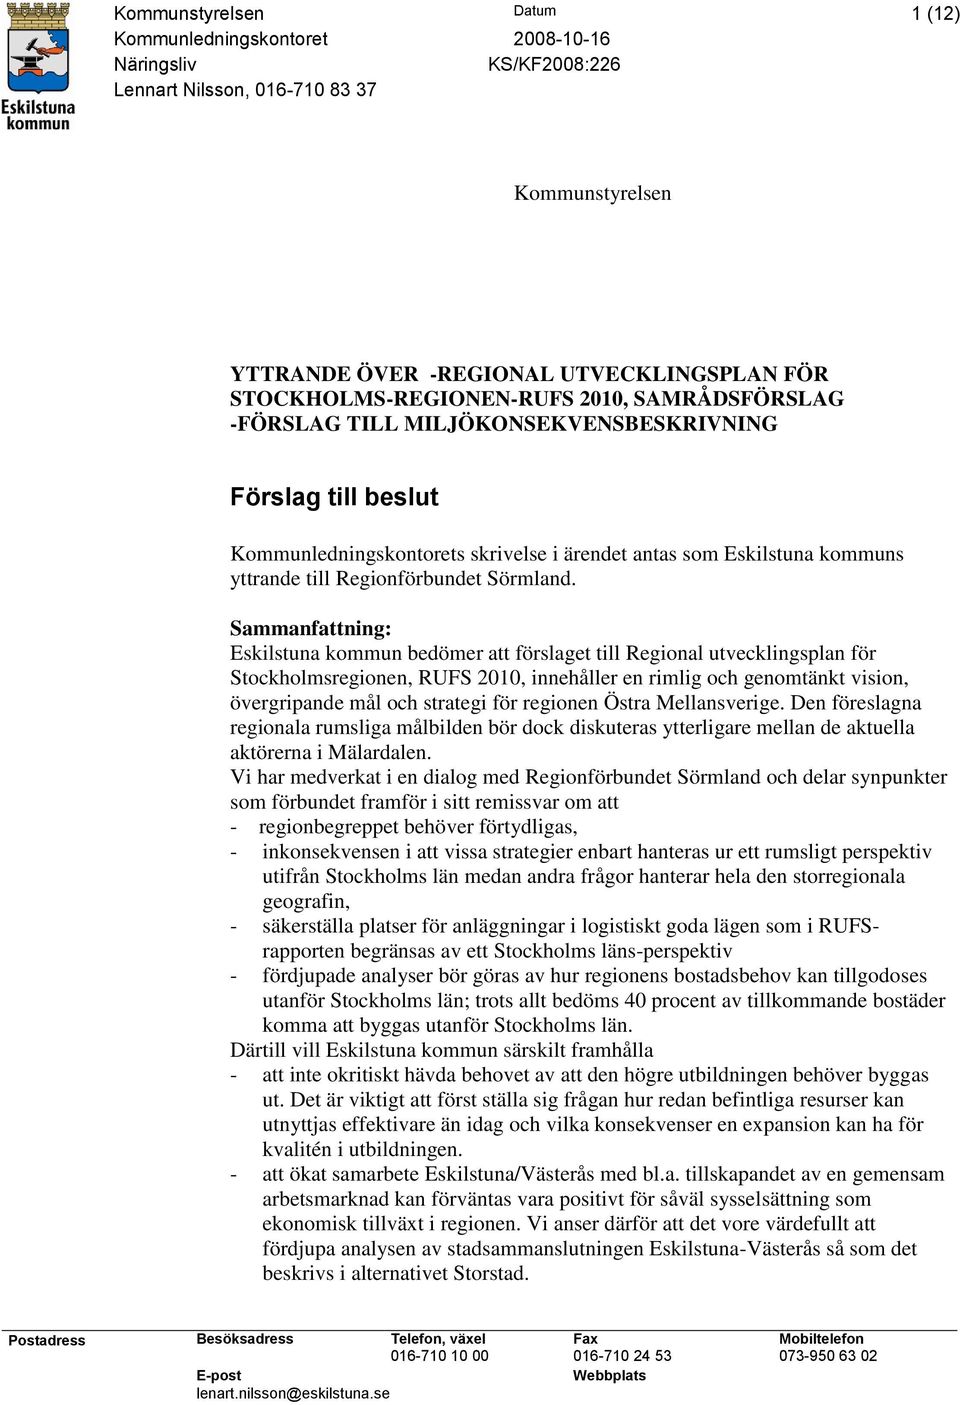 Sammanfattning: Eskilstuna kommun bedömer att förslaget till Regional utvecklingsplan för Stockholmsregionen, RUFS 2010, innehåller en rimlig och genomtänkt vision, övergripande mål och strategi för